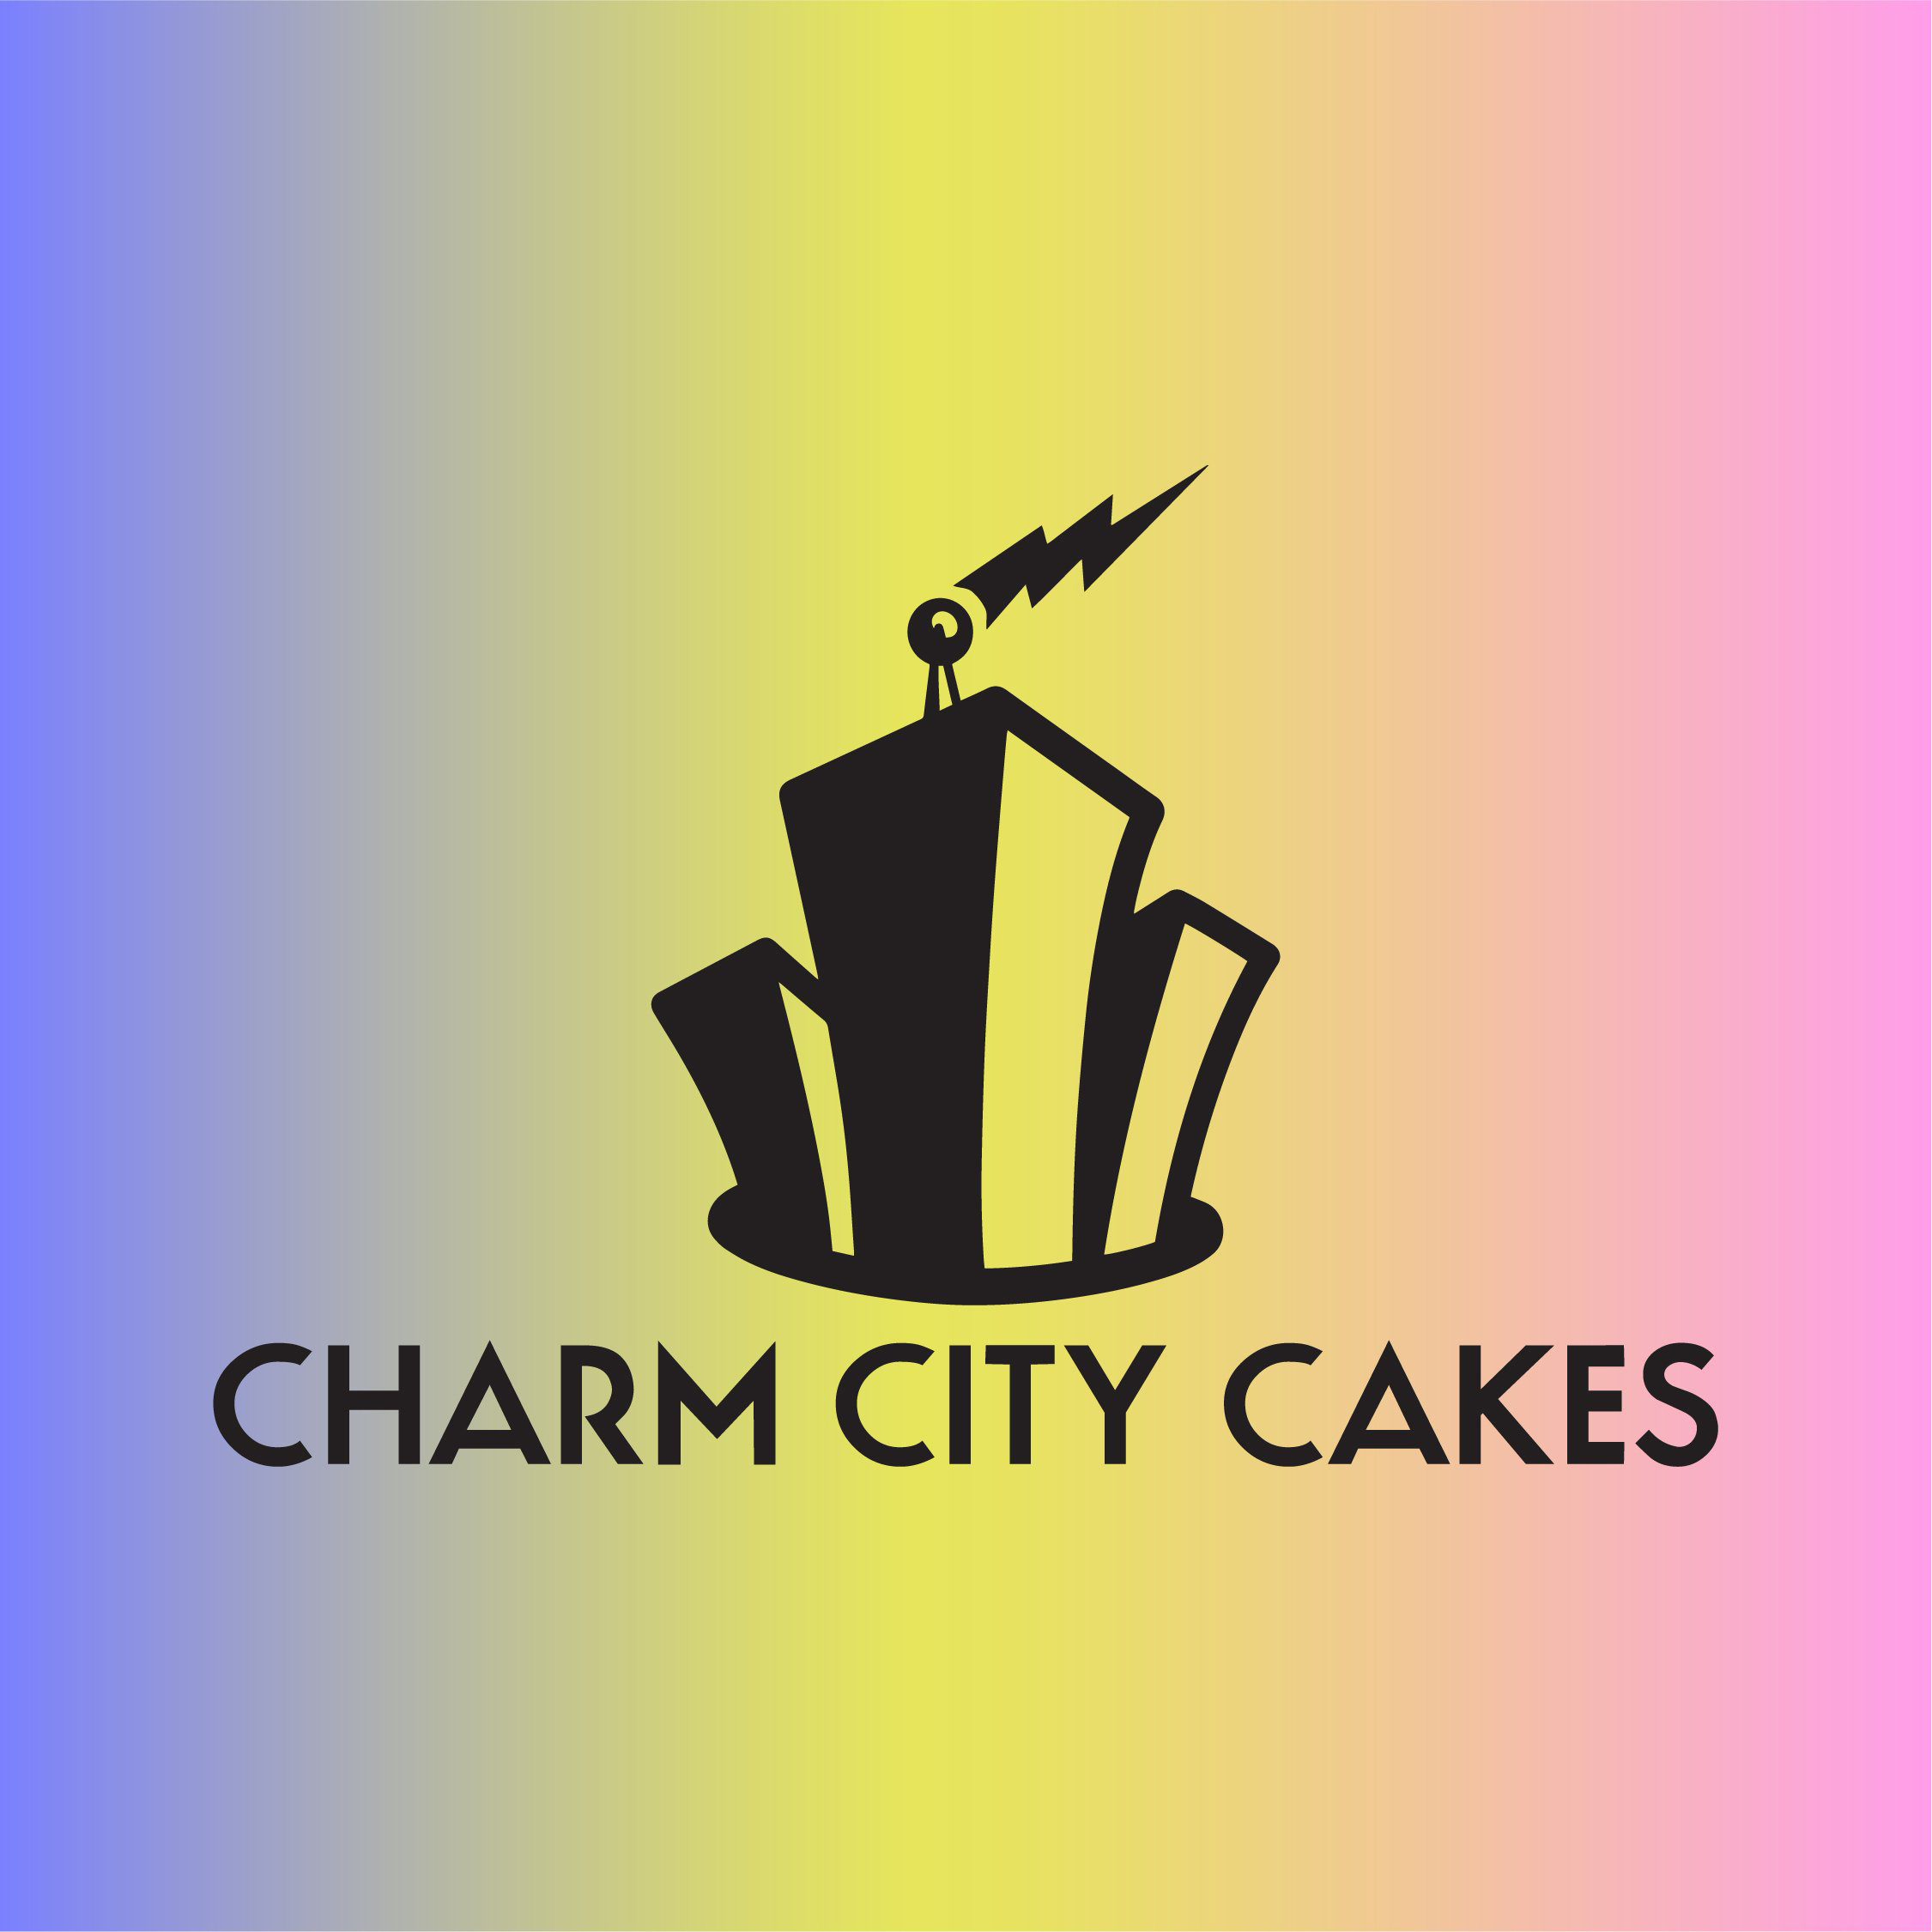 Charm City Cakes